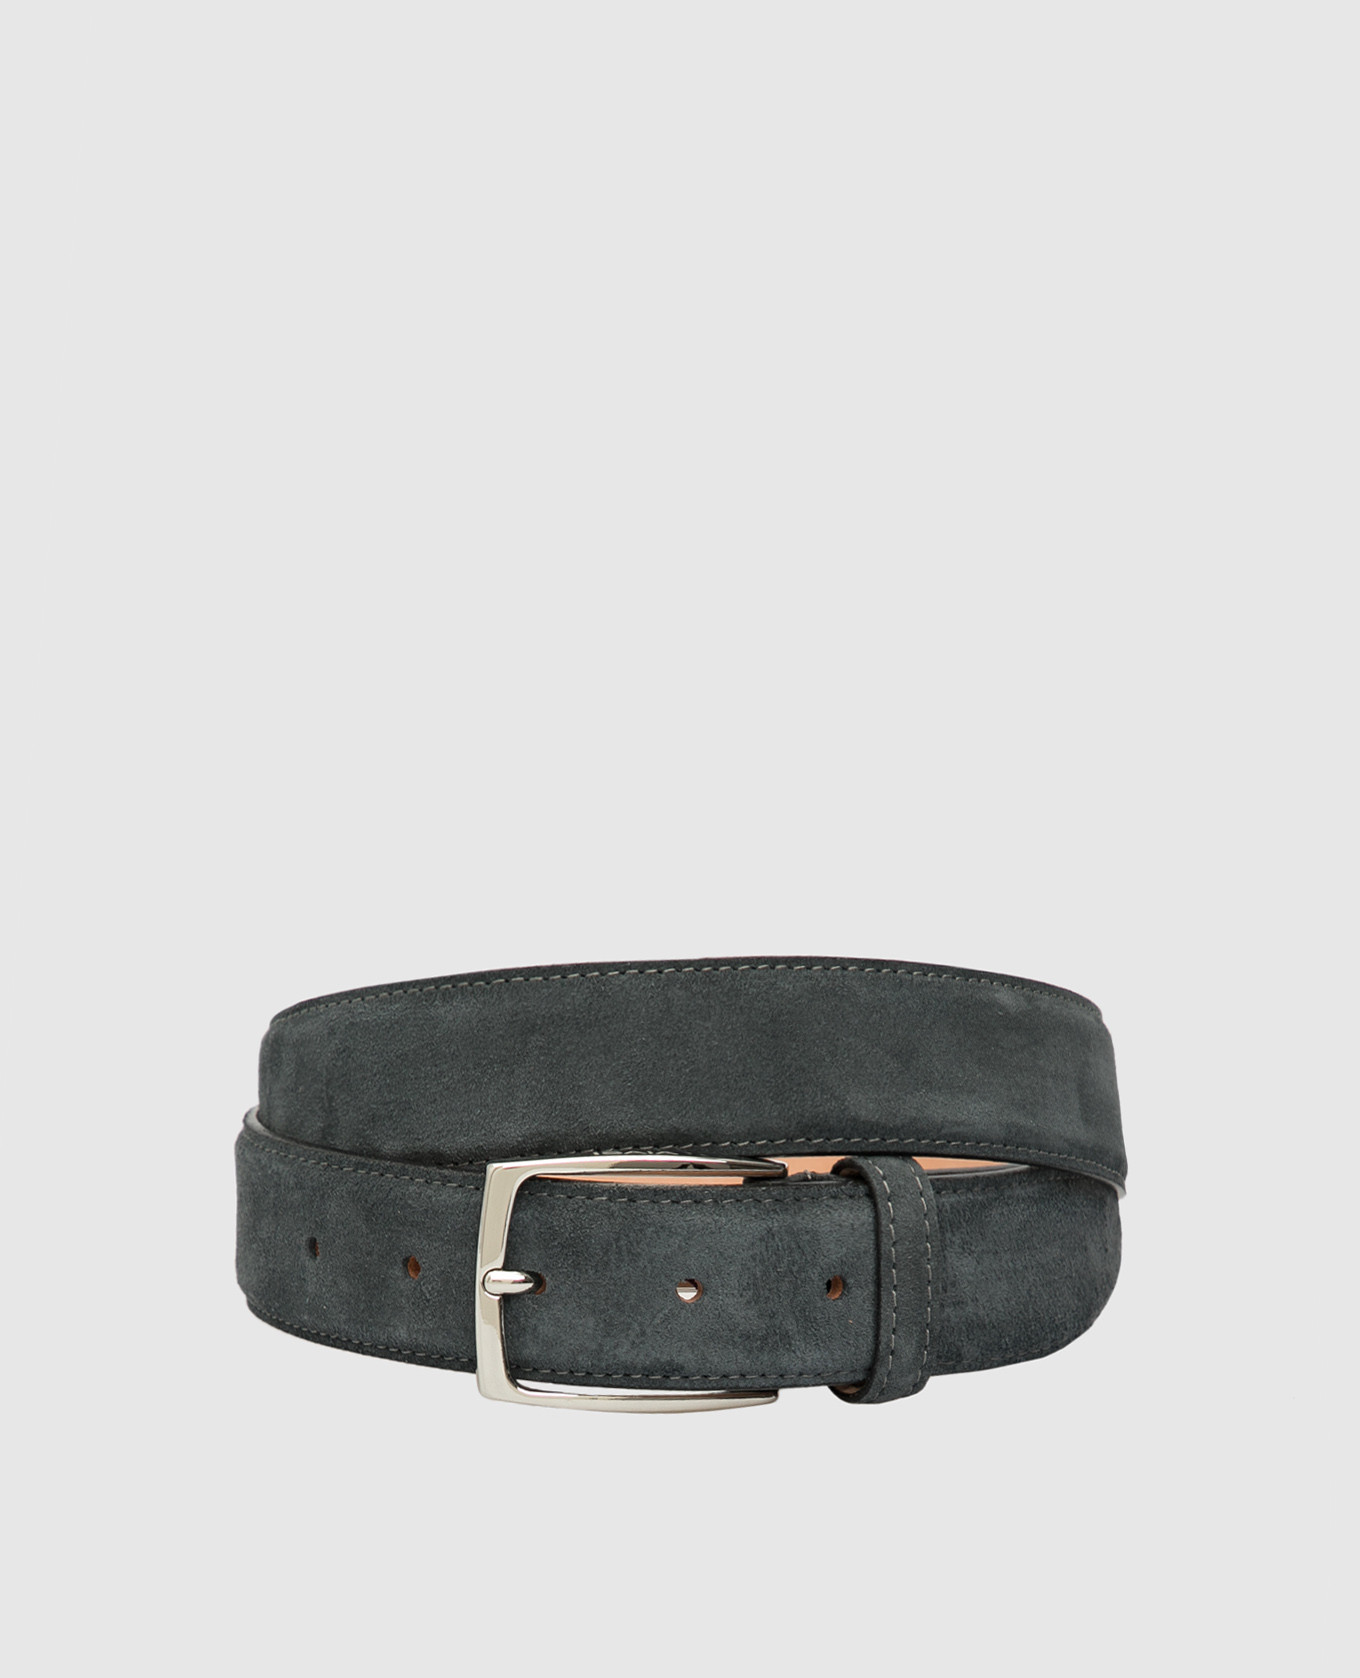 Gray suede belt